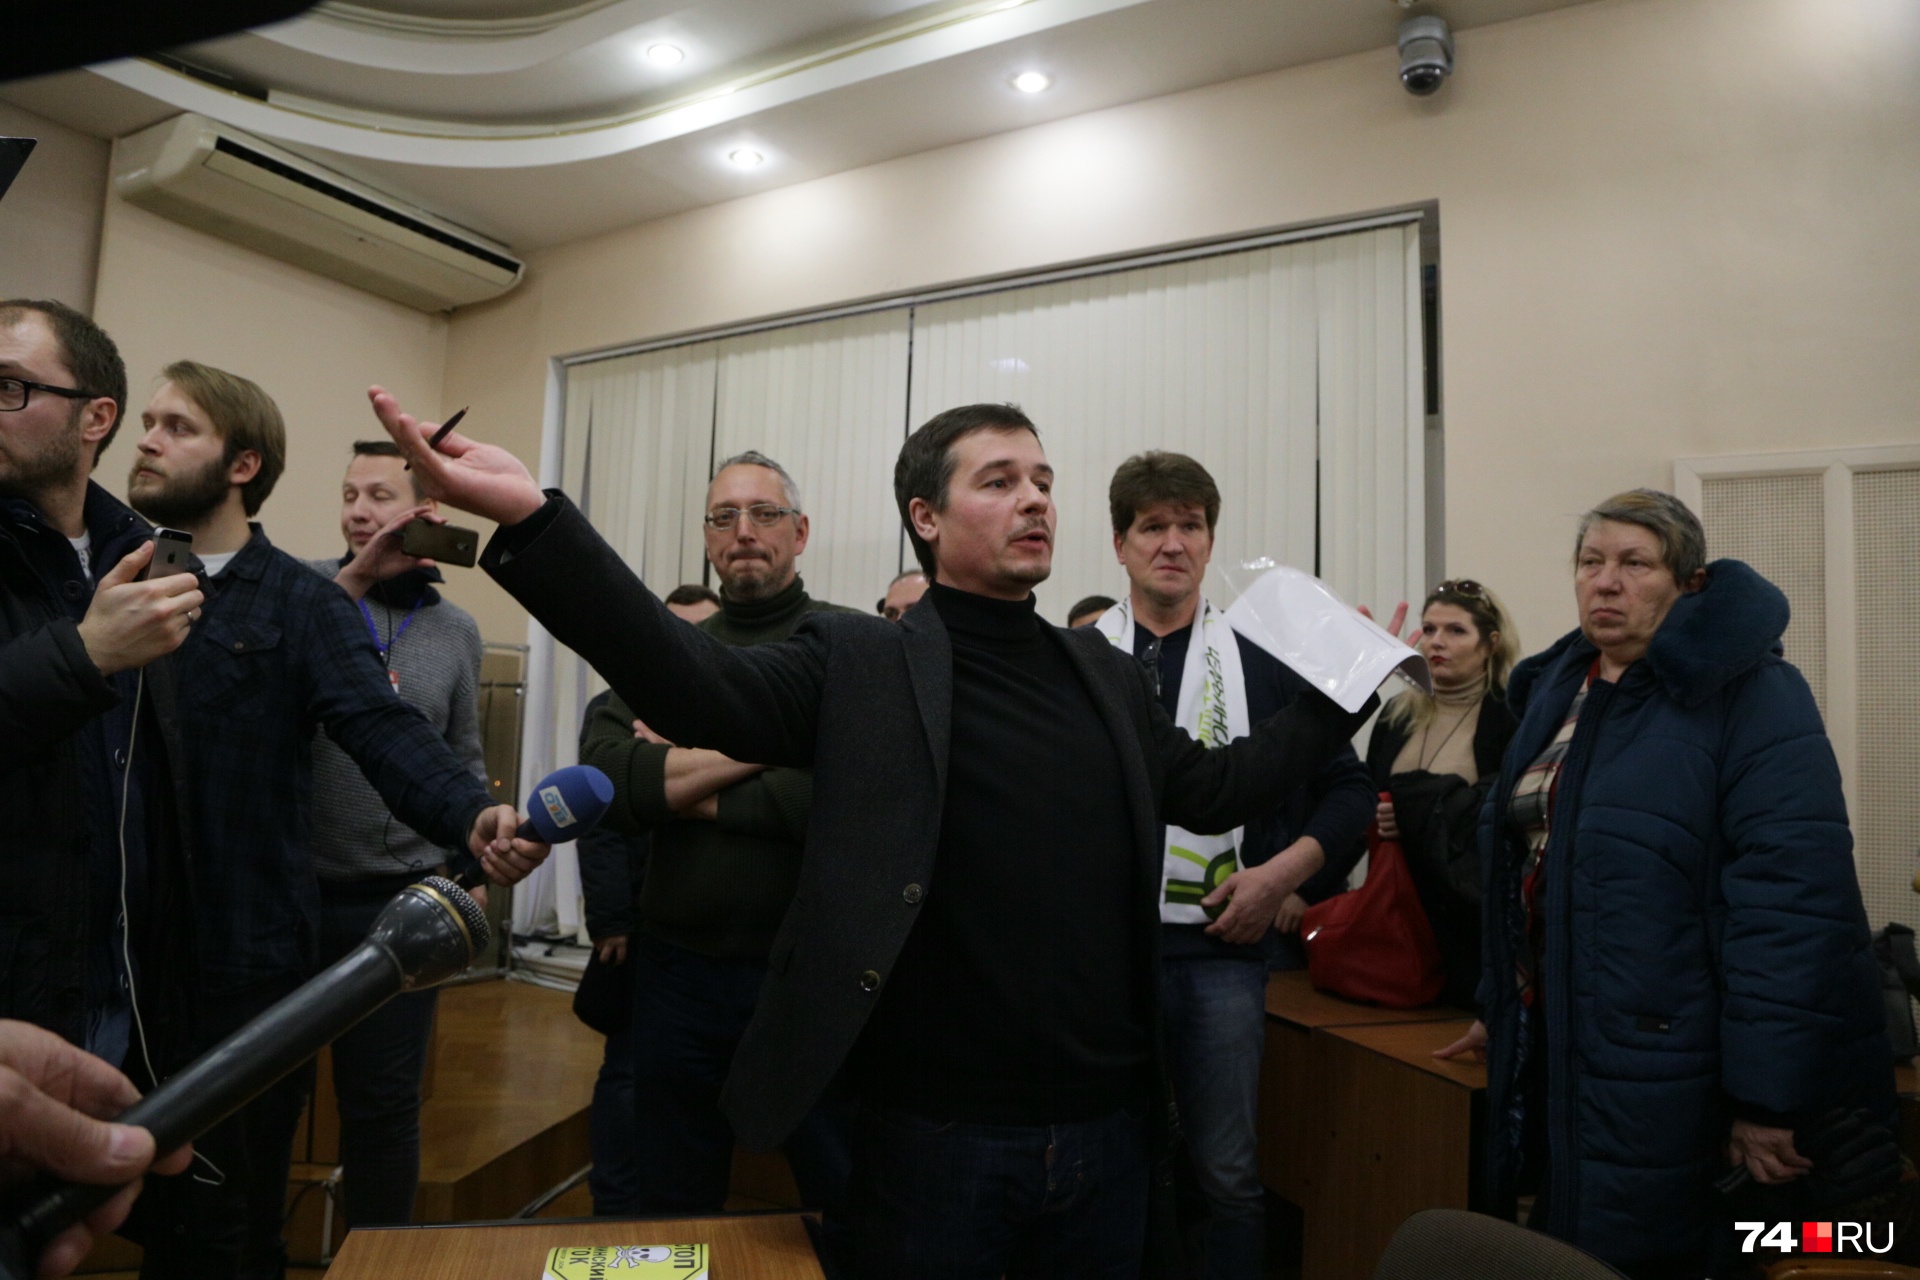 «Не политика, а экопротест»: лидер акции в администрации Челябинска намерен идти к промышленникам